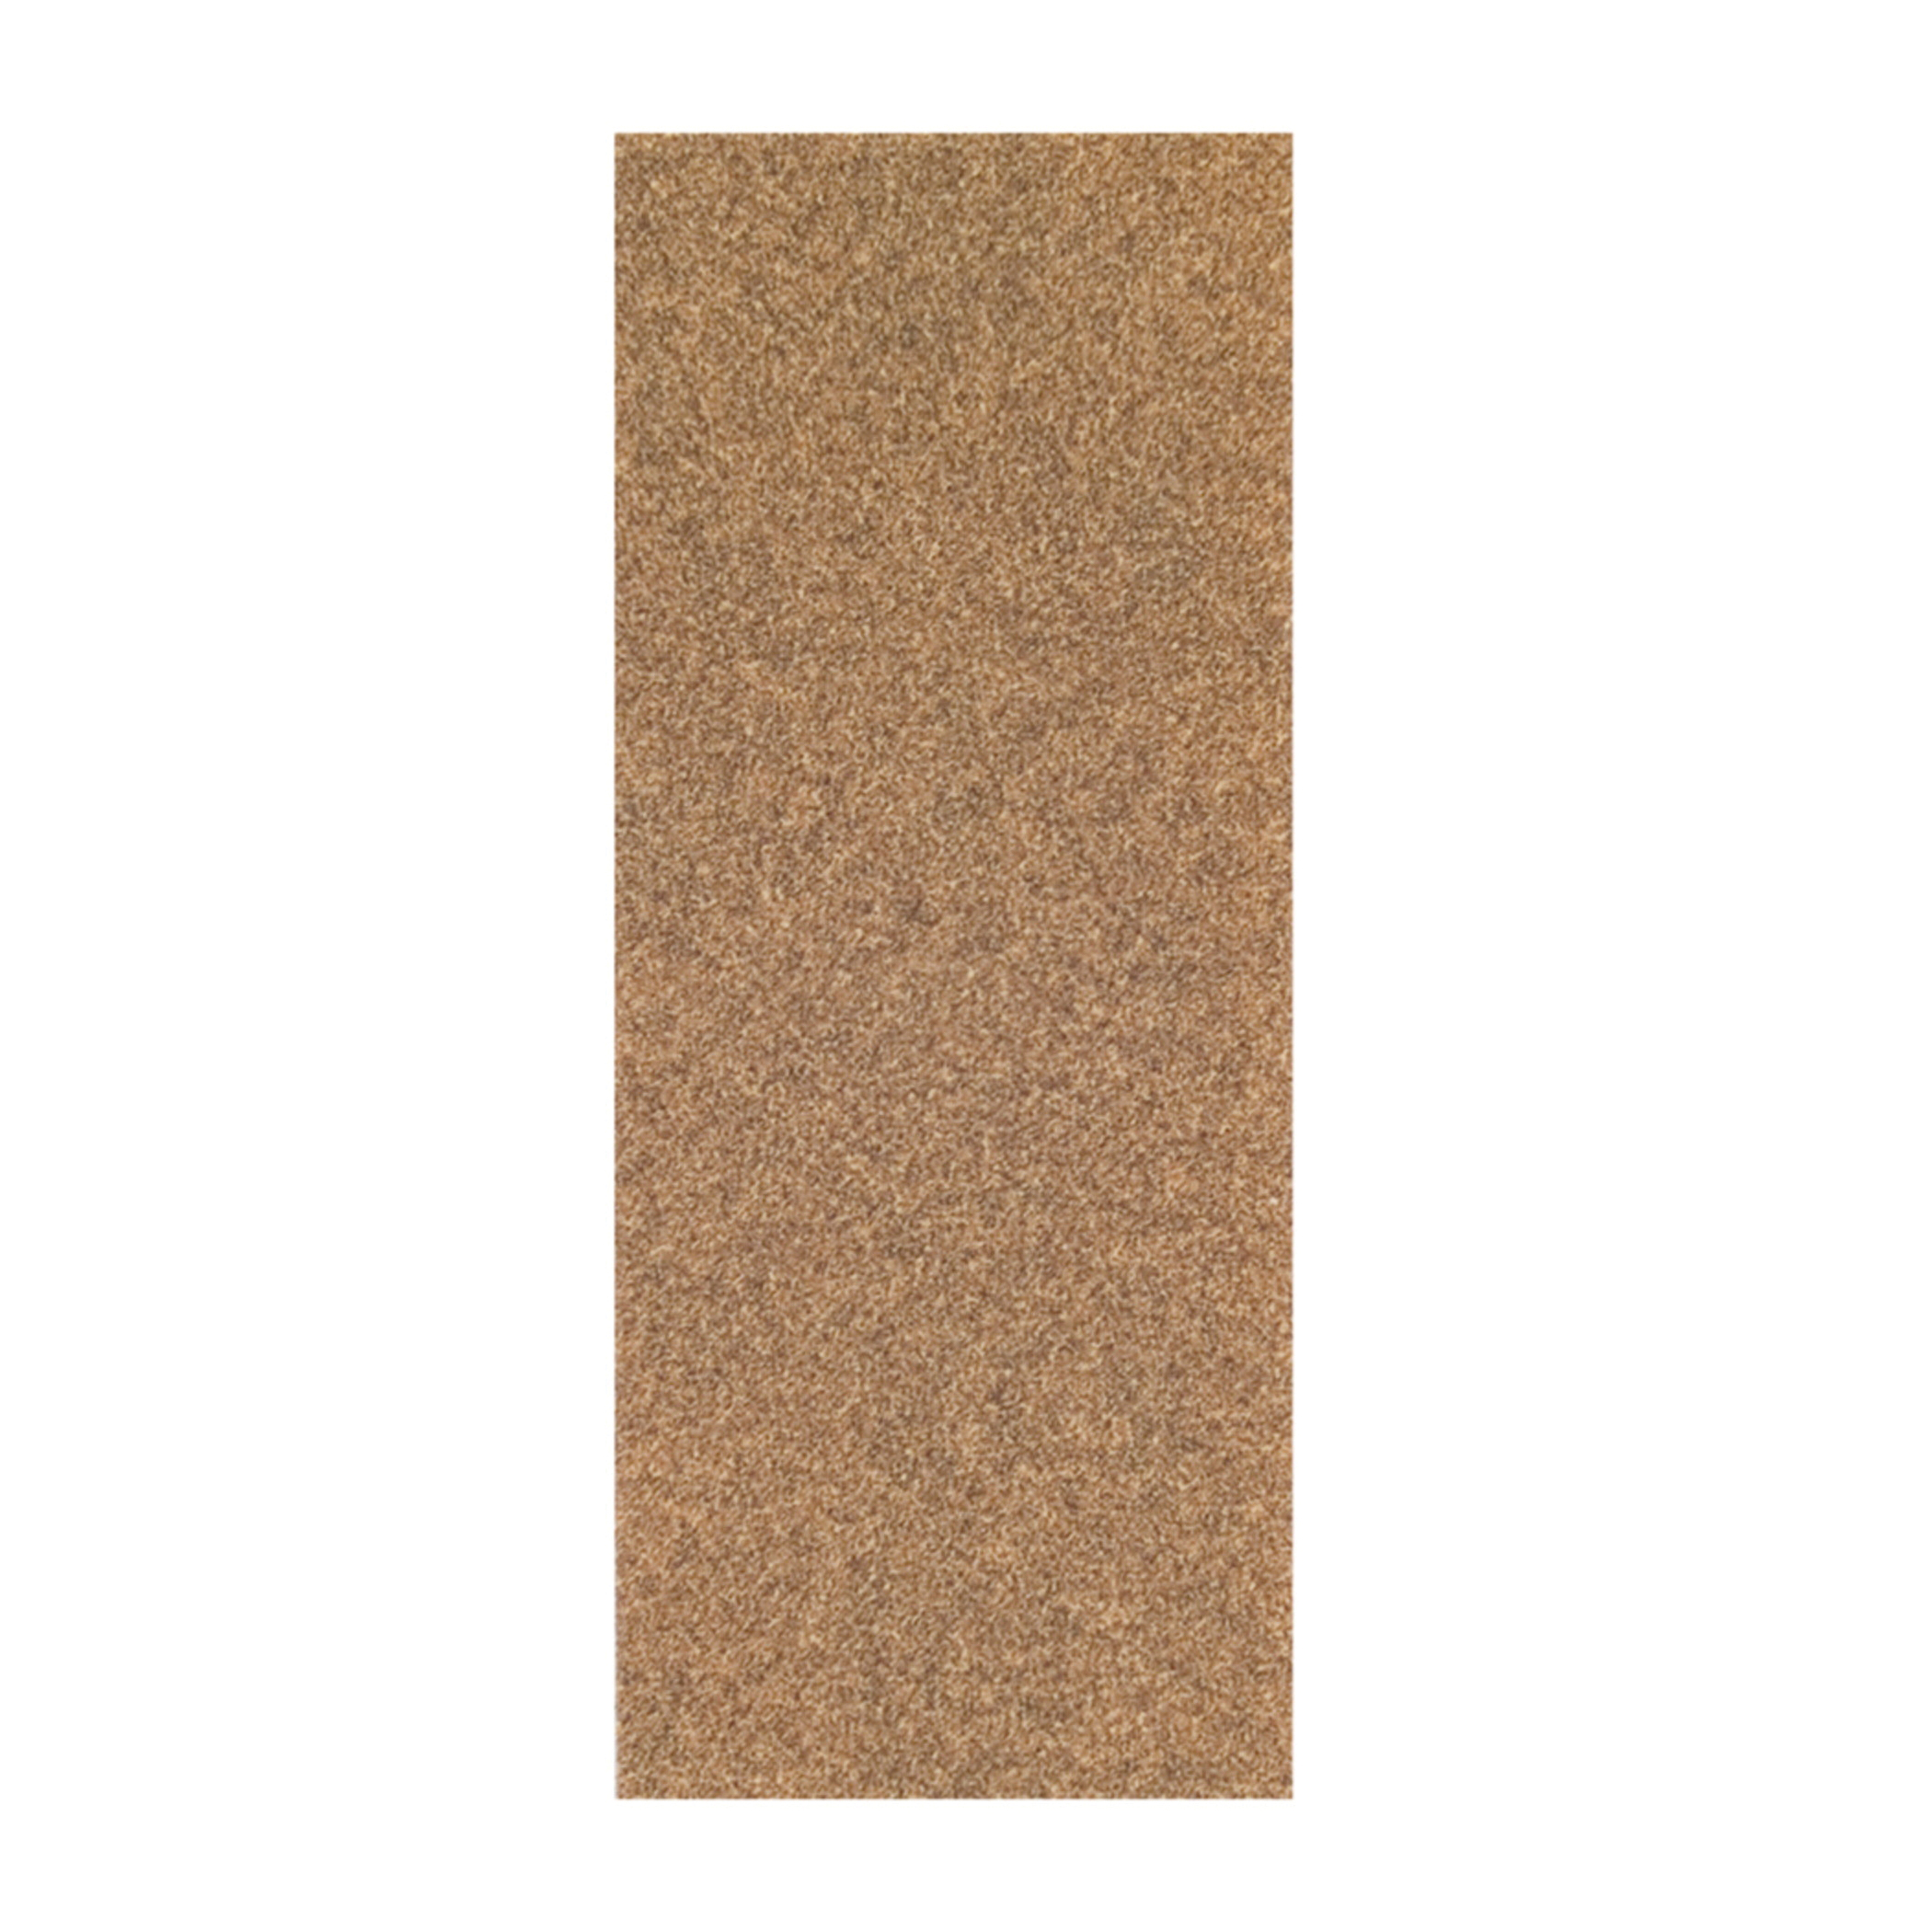 Norton® Adalox® 66261102900 A213 Coated Sandpaper Cut Sheet, 9 in L x 3-2/3 in W, P100 Grit, Medium Grade, Aluminum Oxide Abrasive, Paper Backing